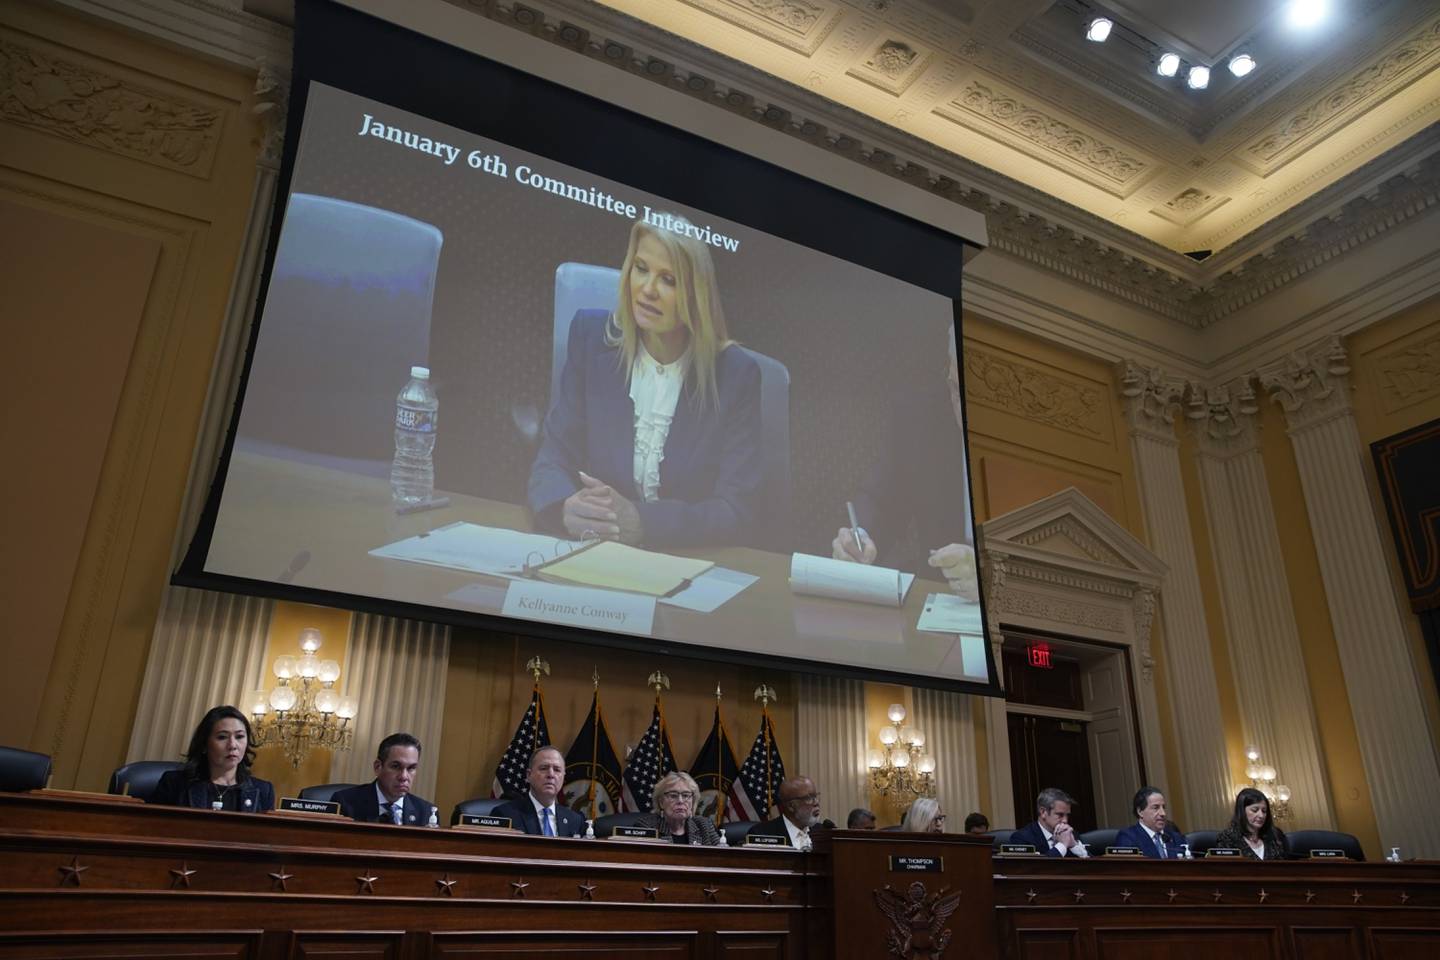 Kellyanne Conway, exasesora principal del expresidente estadounidense Donald Trump, aparece en una pantalla durante una audiencia del Comité Selecto para Investigar el Ataque del 6 de enero en el Capitolio de Estados Unidos en Washington, DC, Estados Unidos.dfd